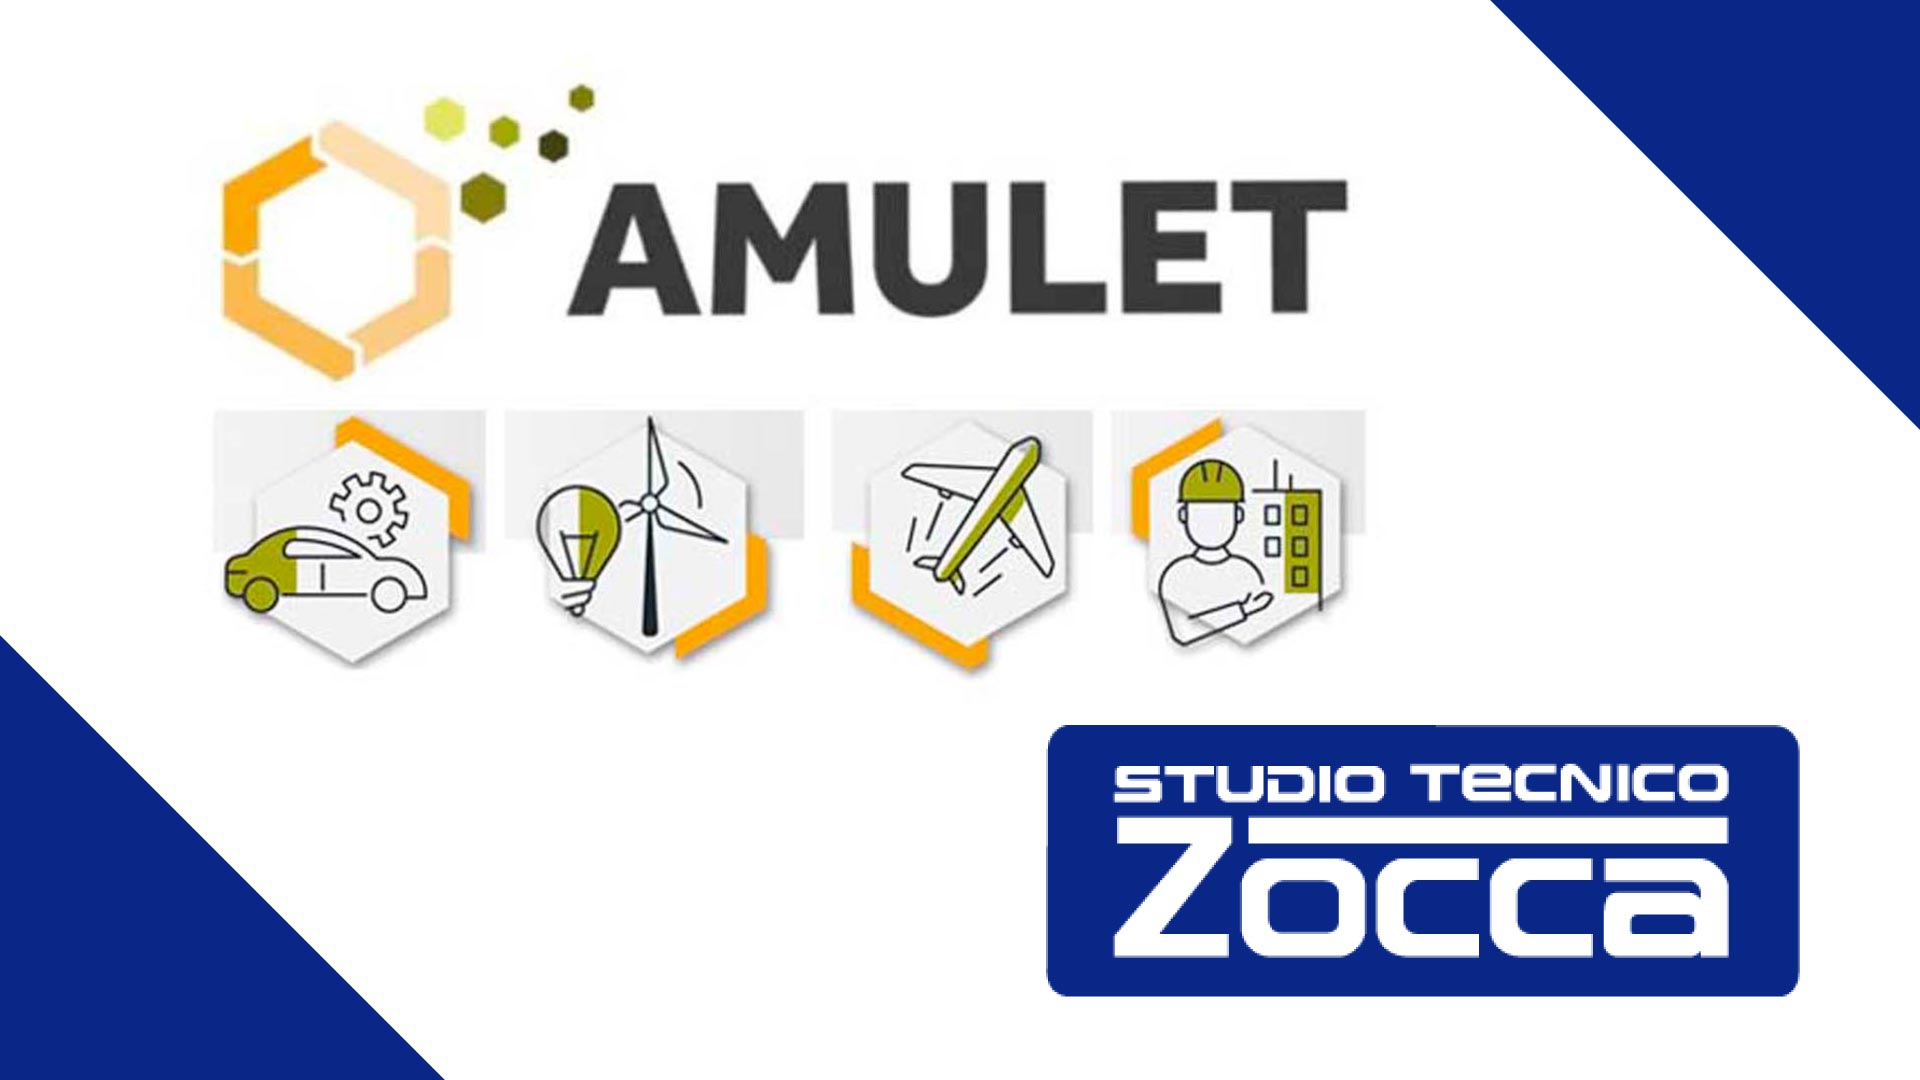 StudioZocca_Amulet